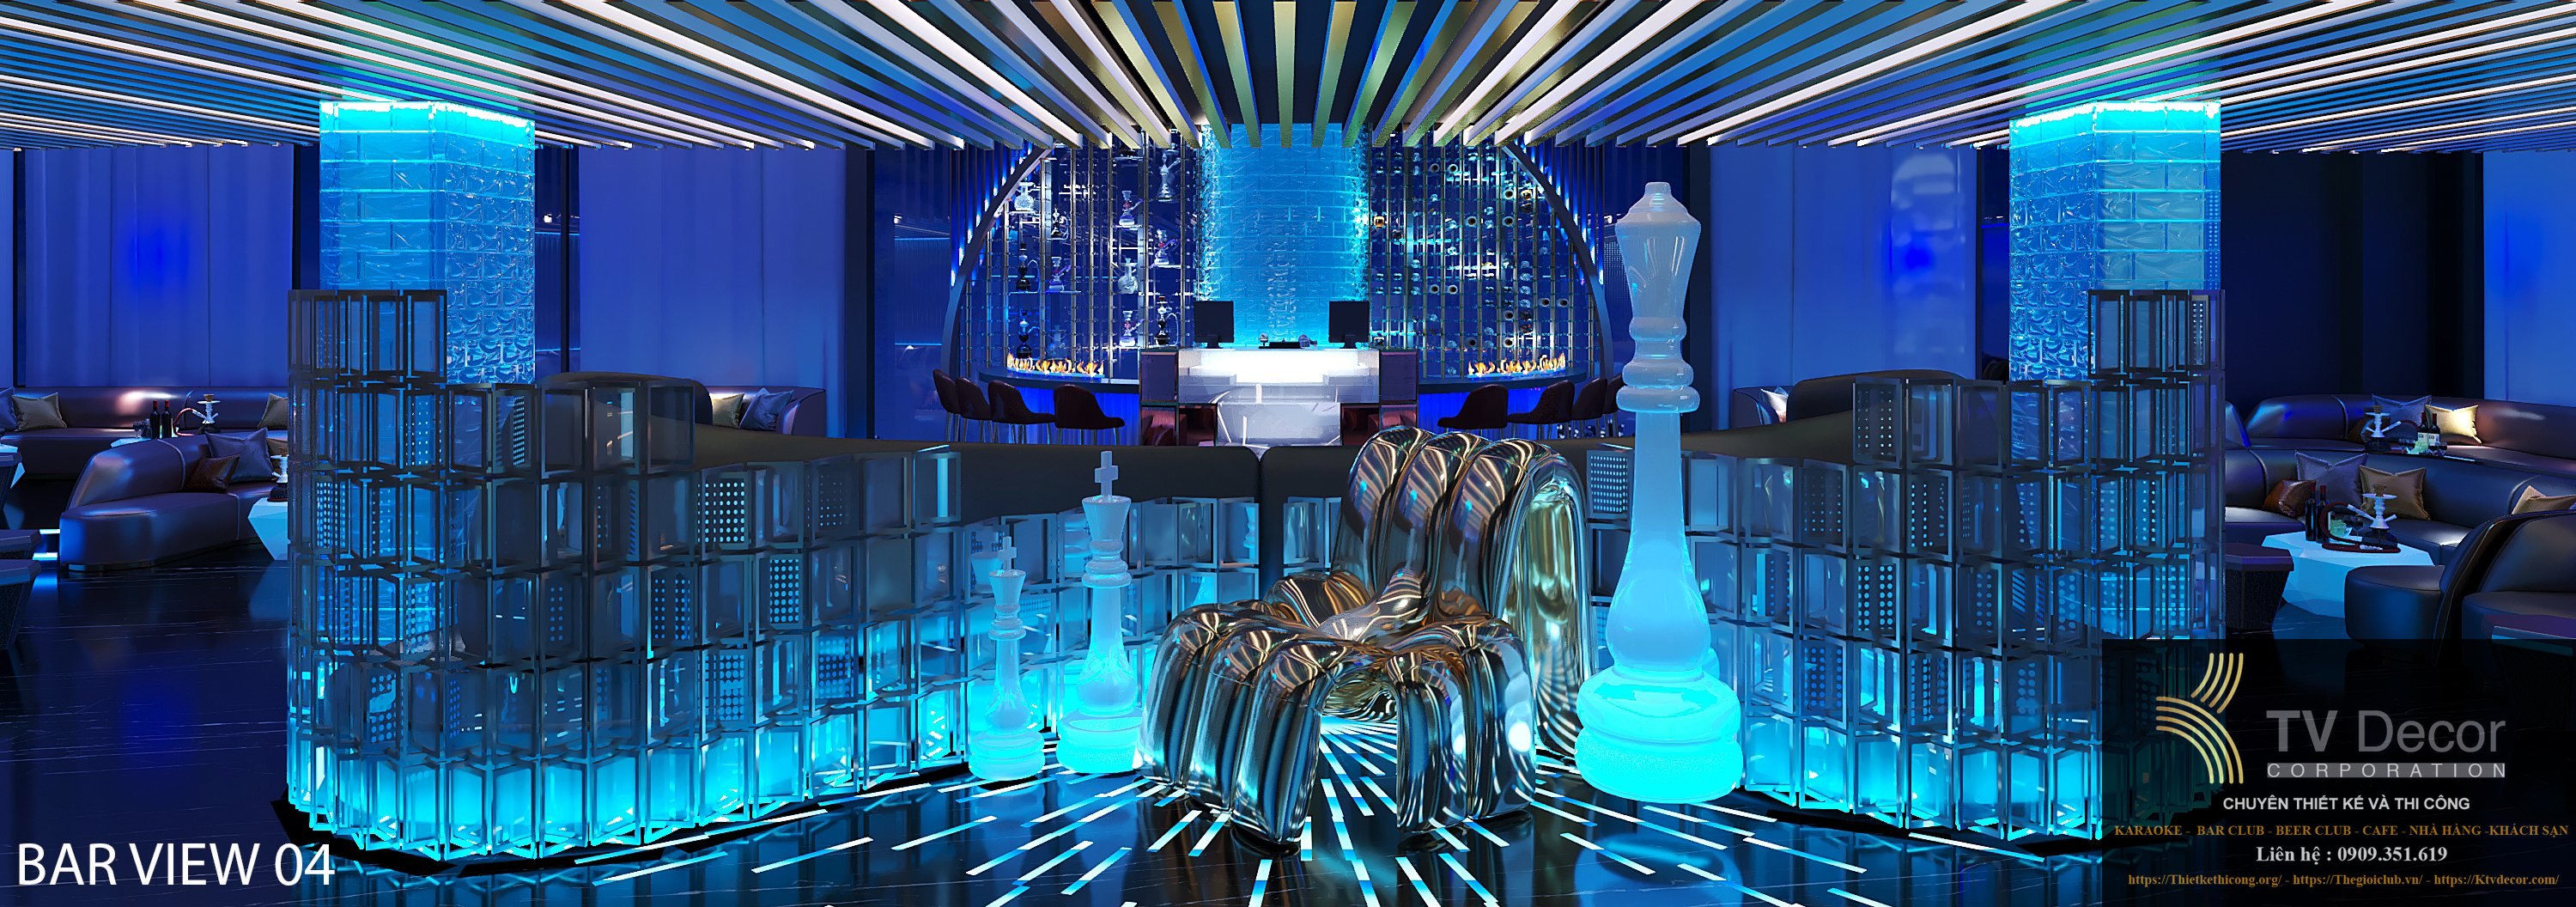 Thiết kế Lounge Bar và karaoke nổi bật tại TPHCM 5